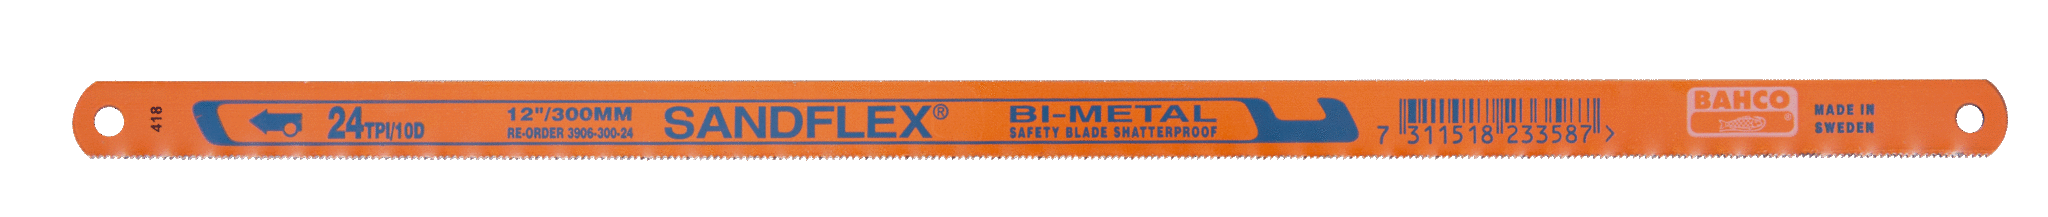 Биметаллические ножовочные полотна SANDFLEX®. Новое биметаллическое полотно SANDFLEX с повышеным содержанием кoбальта BAHCO 3906-250-32-5P